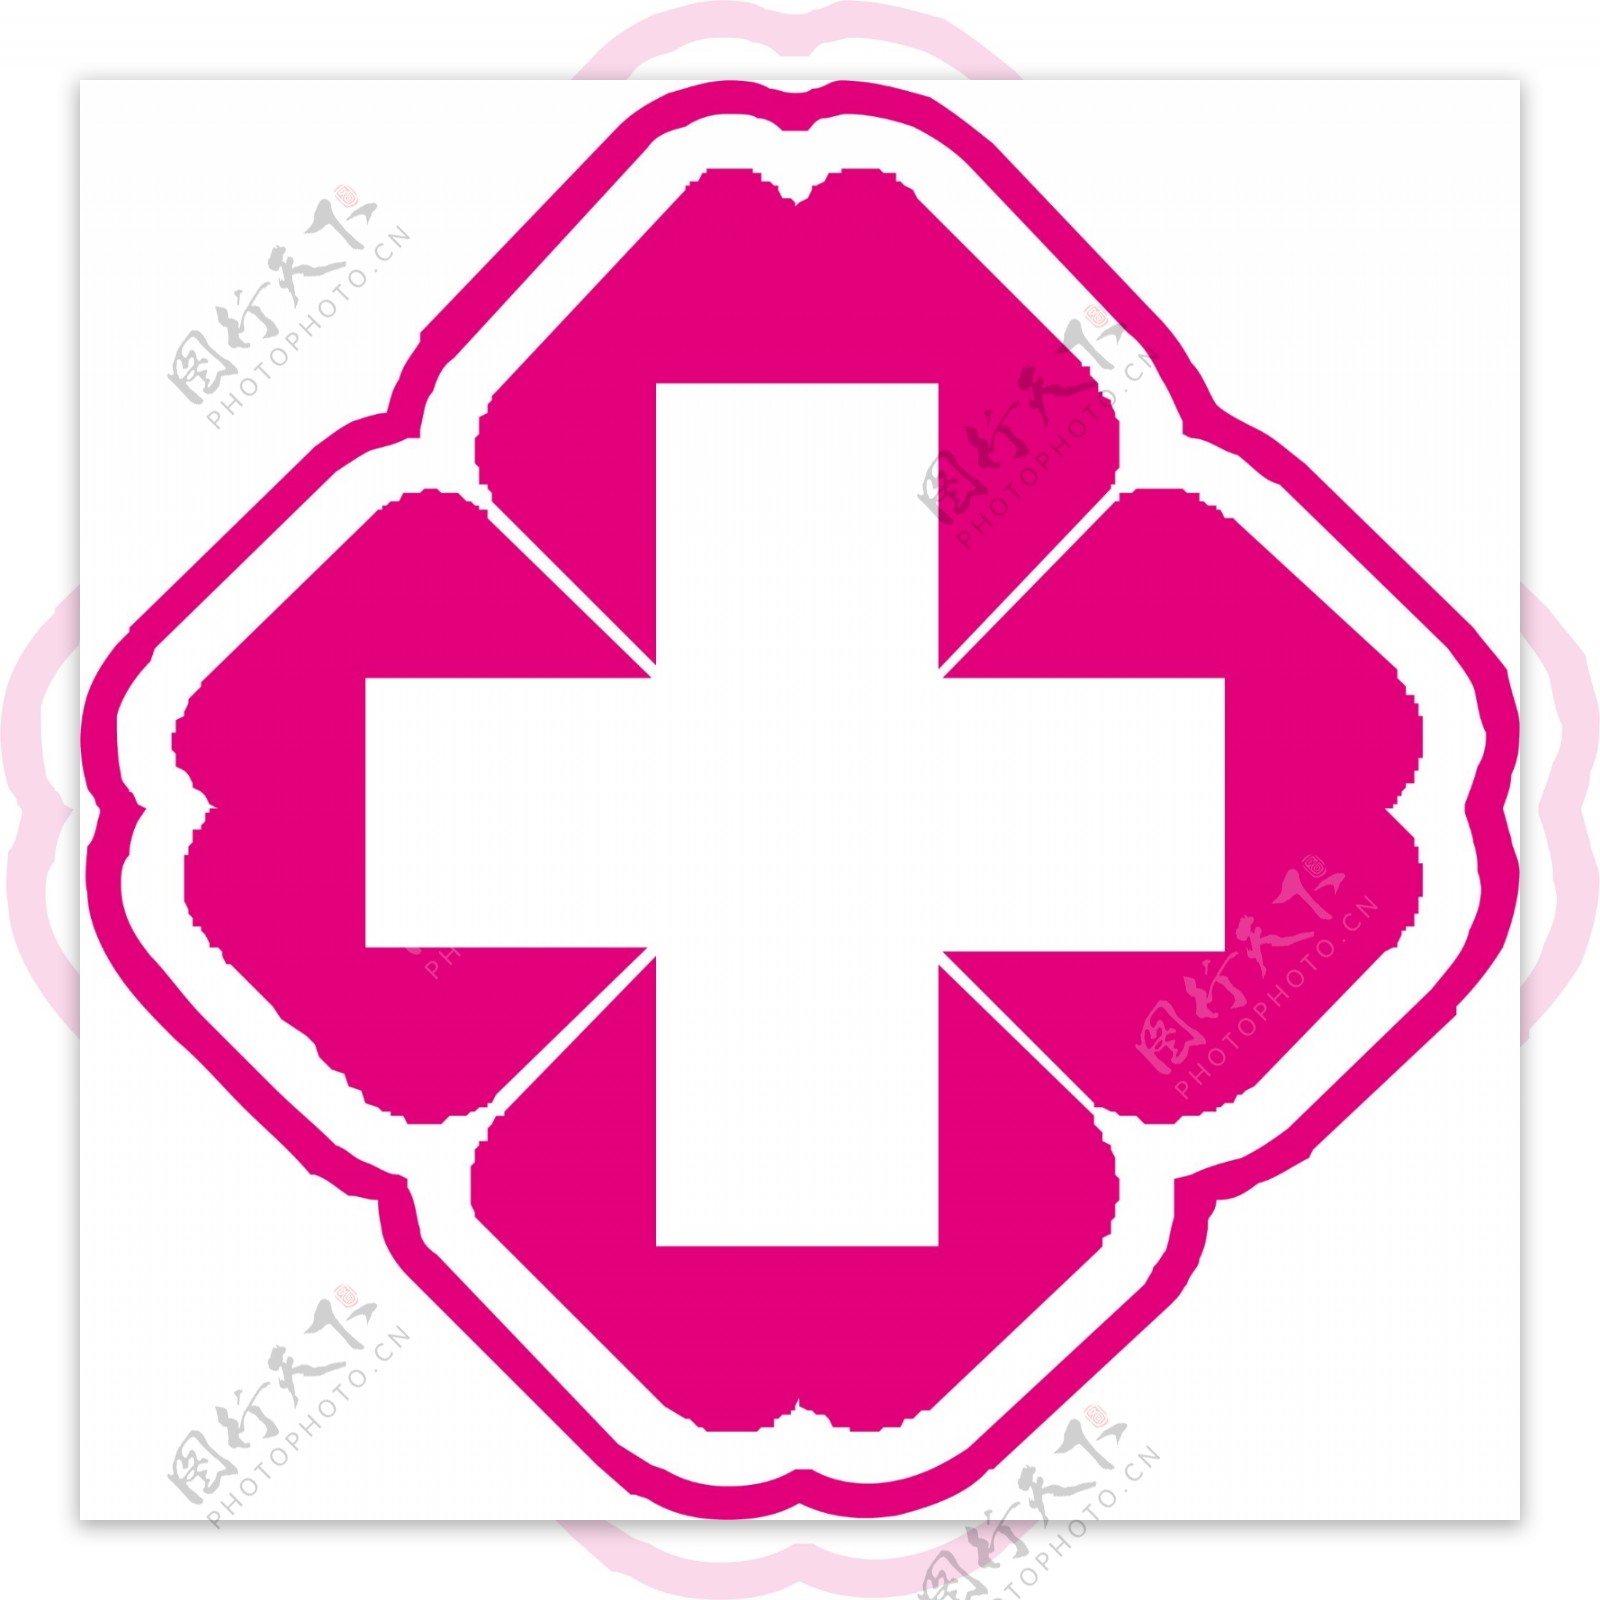 红十字标志设计医院标志